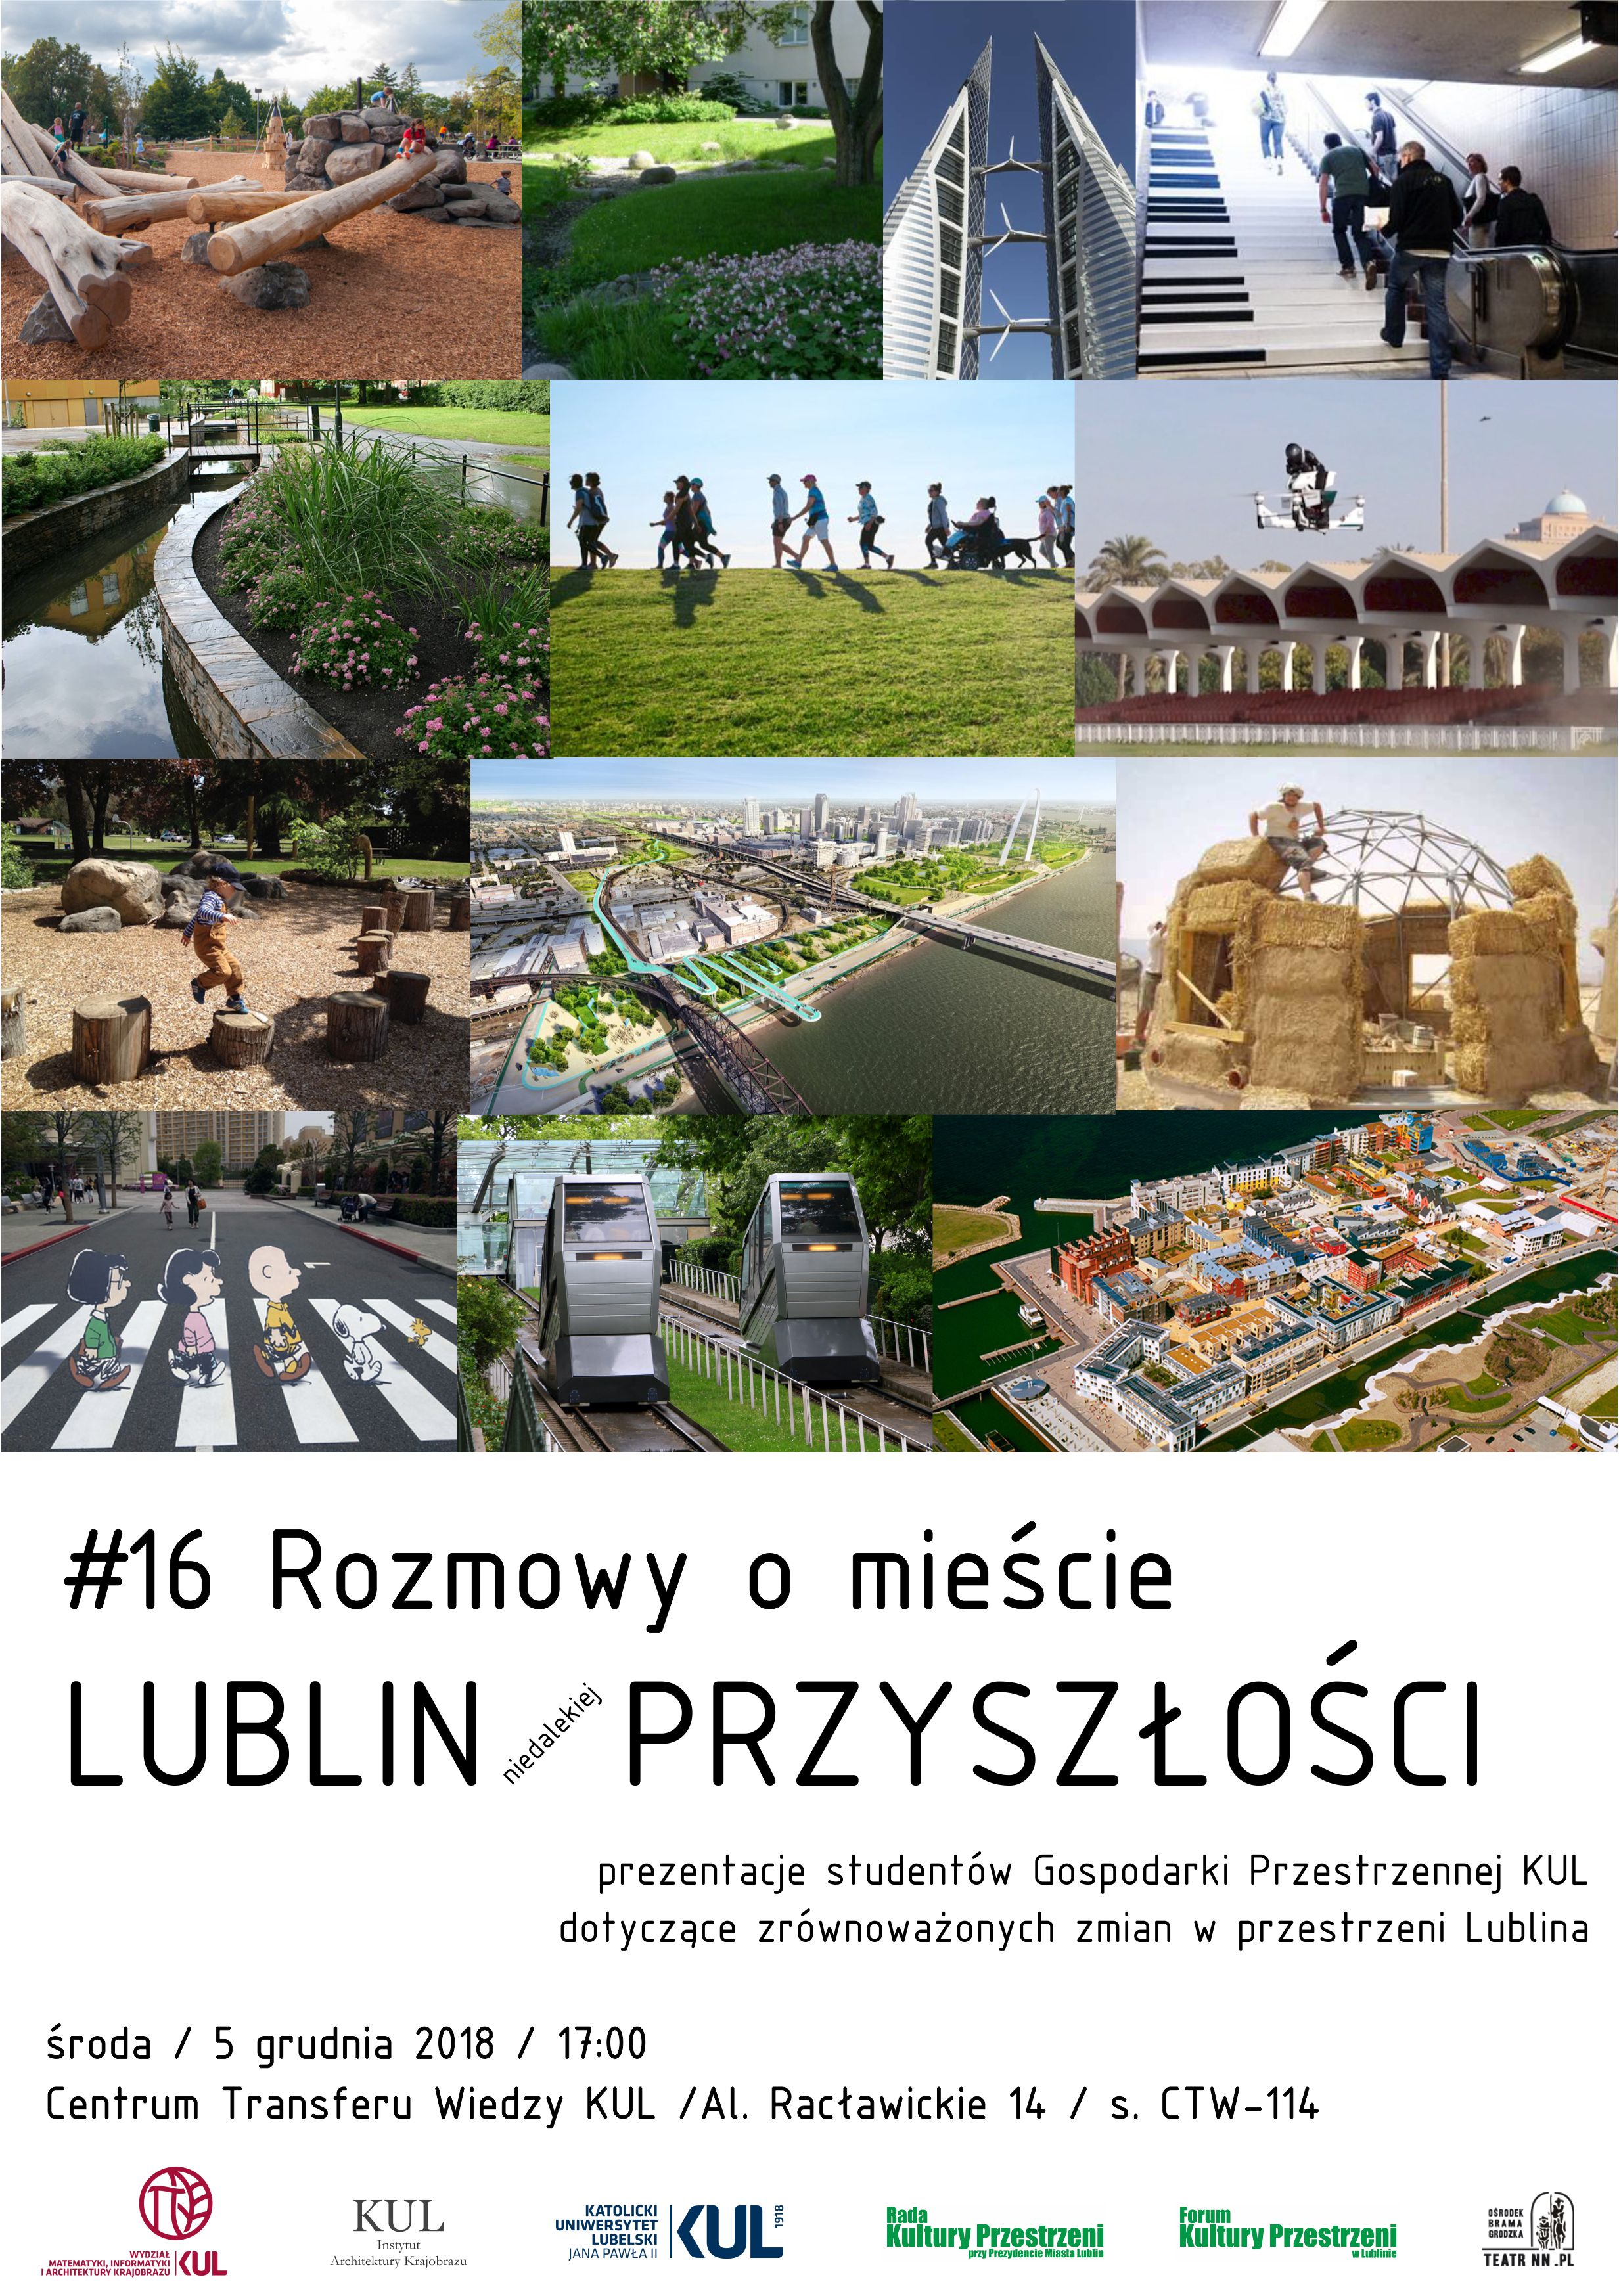 plakat_2018_12_05_lublin_przyszlosci